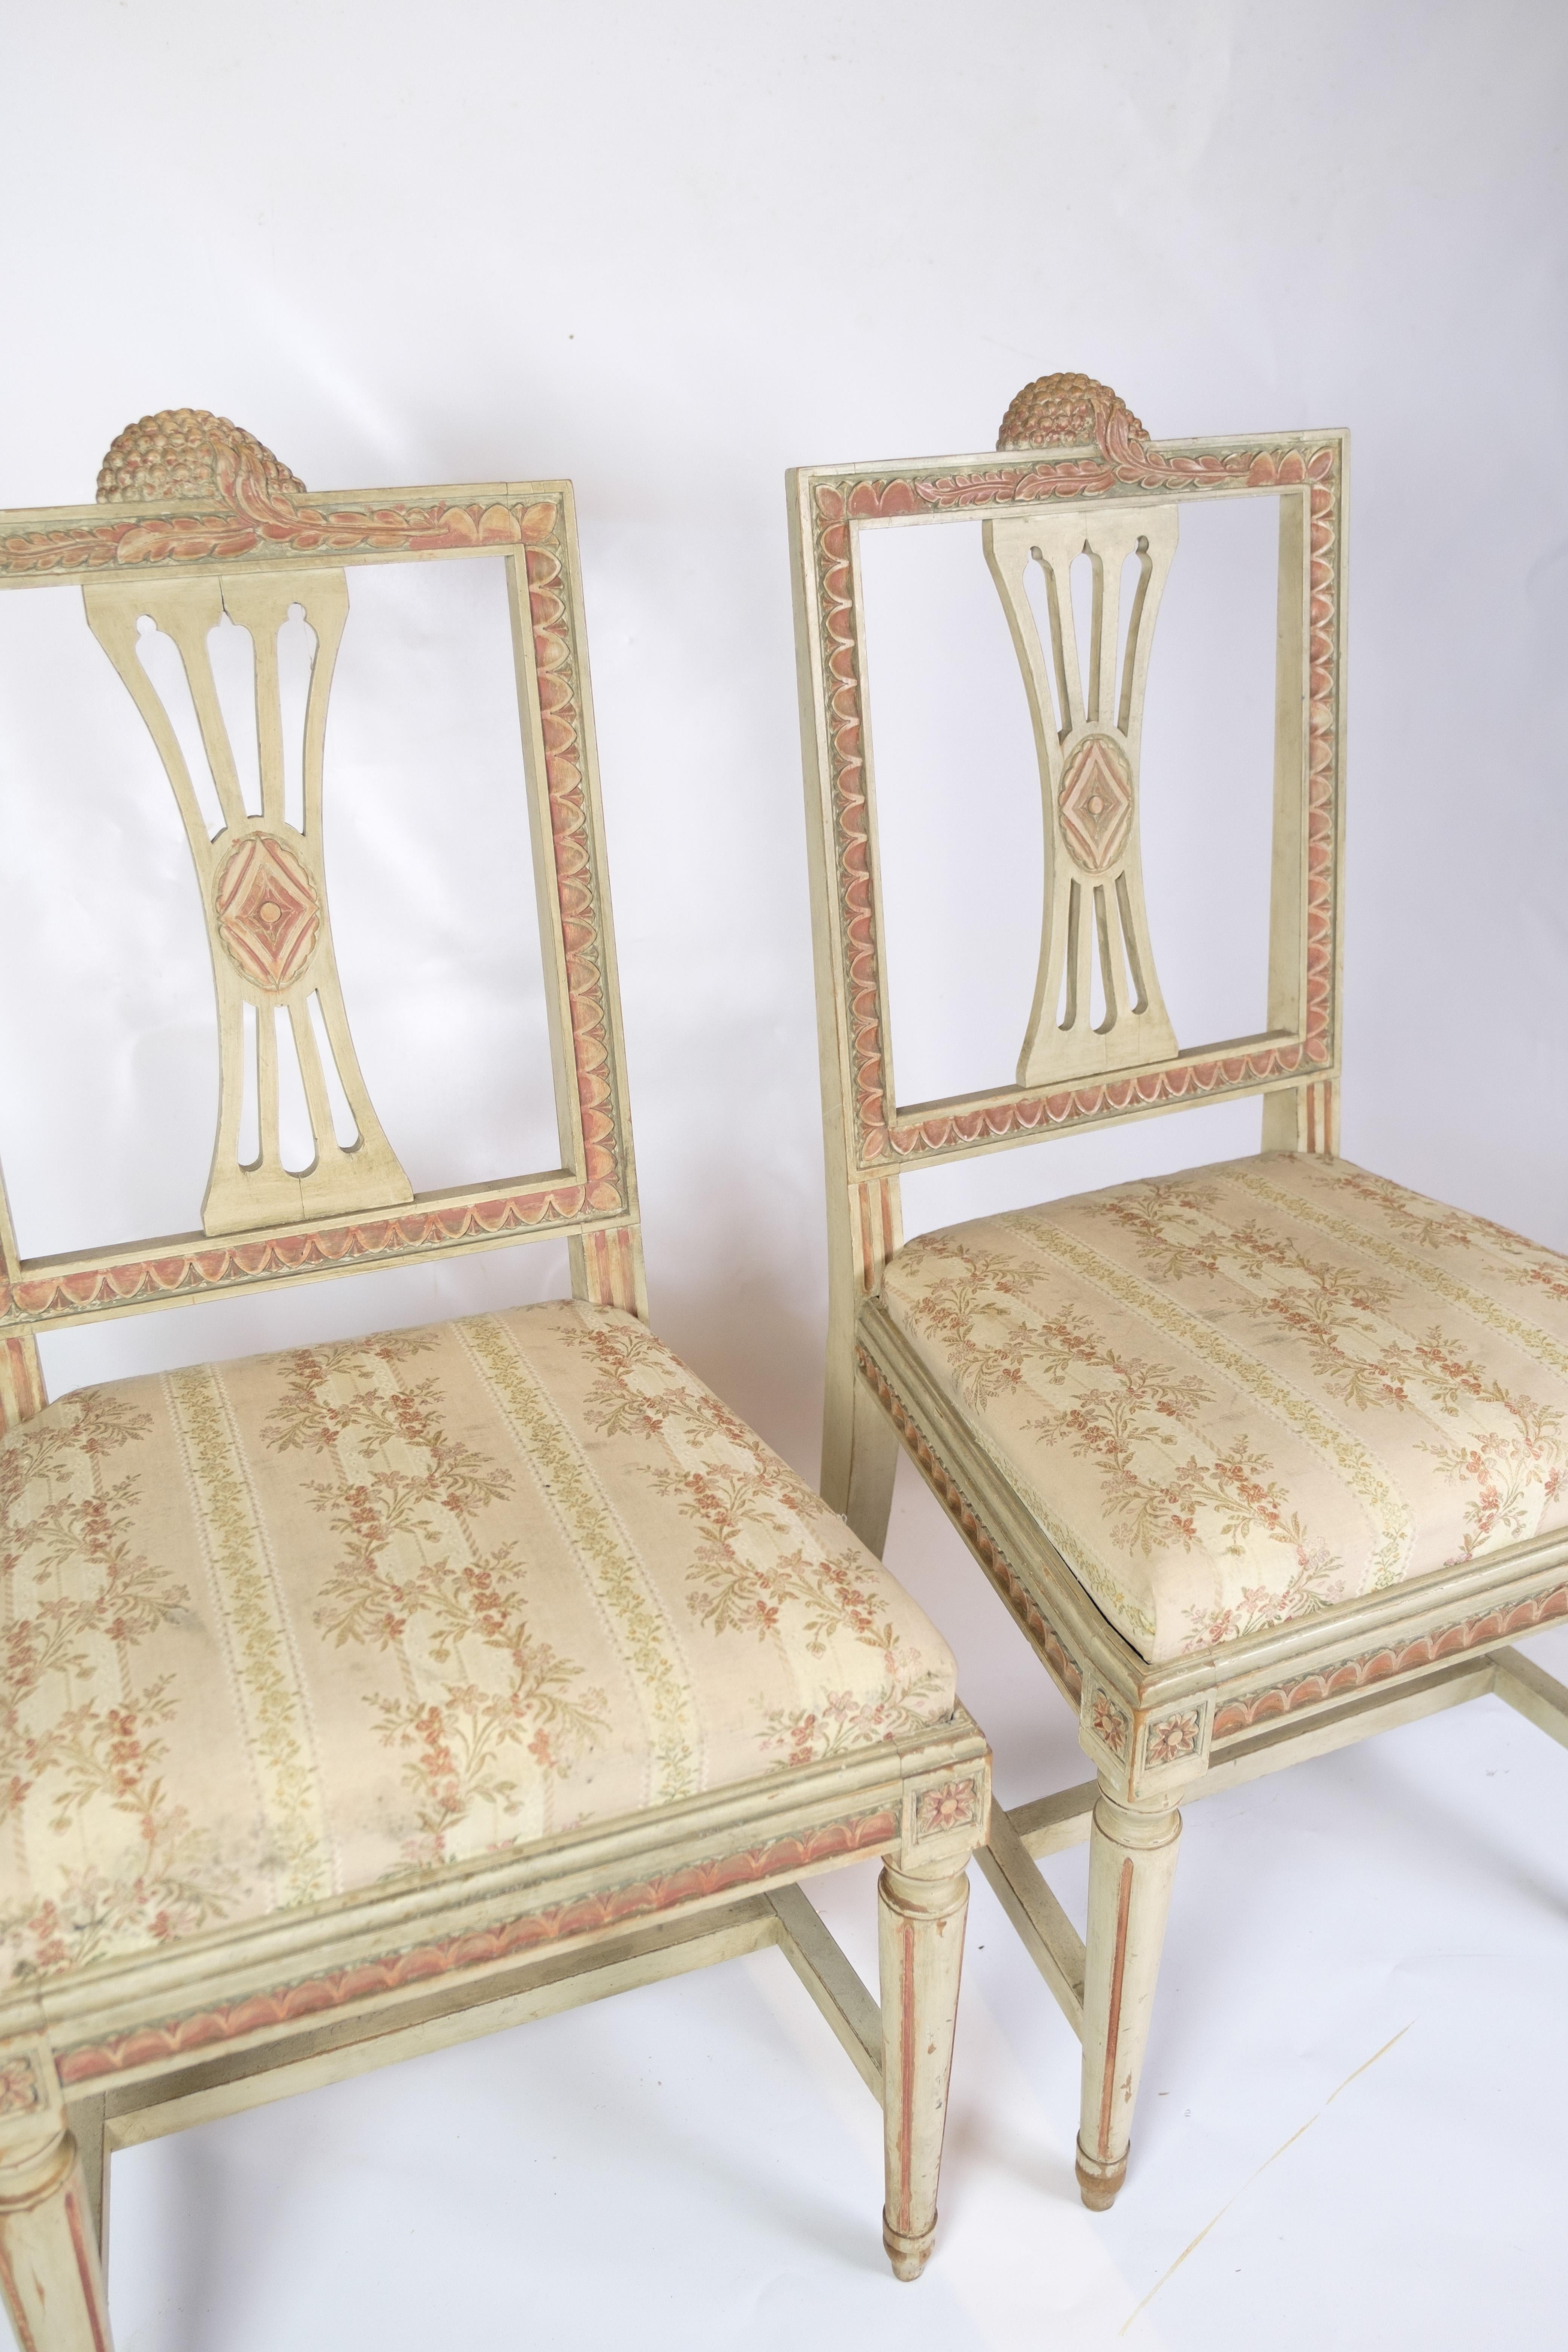 Cet ensemble de deux chaises de style gustavien datant de 1880 est une belle expression de l'art et de l'esthétique du mobilier européen ancien. Inspirées de la période gustavienne suédoise, ces chaises se caractérisent par leur design élégant et